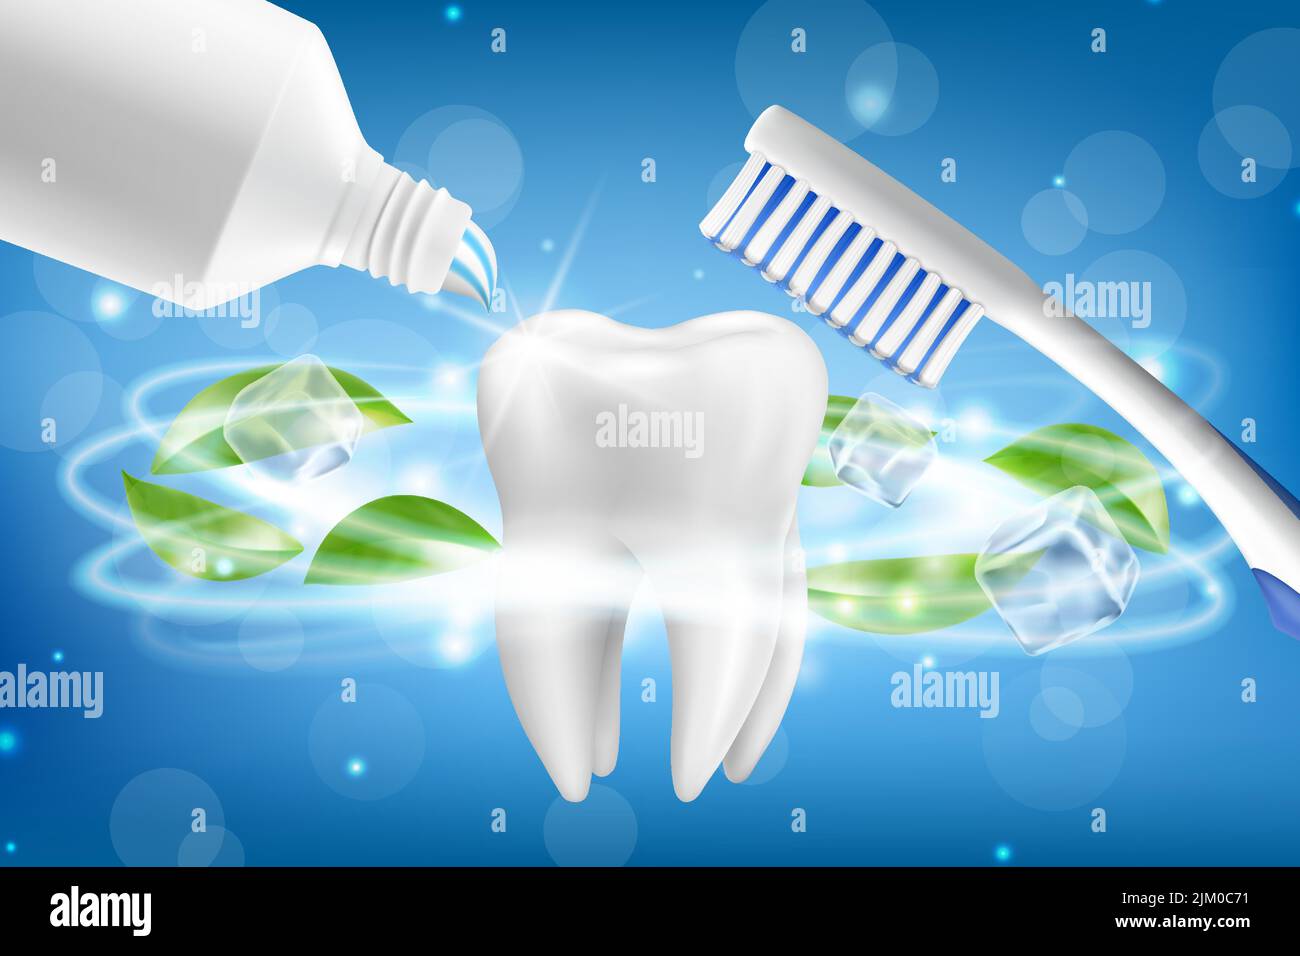 Publicidad para pasta de dientes Imágenes vectoriales de stock - Página 2 -  Alamy